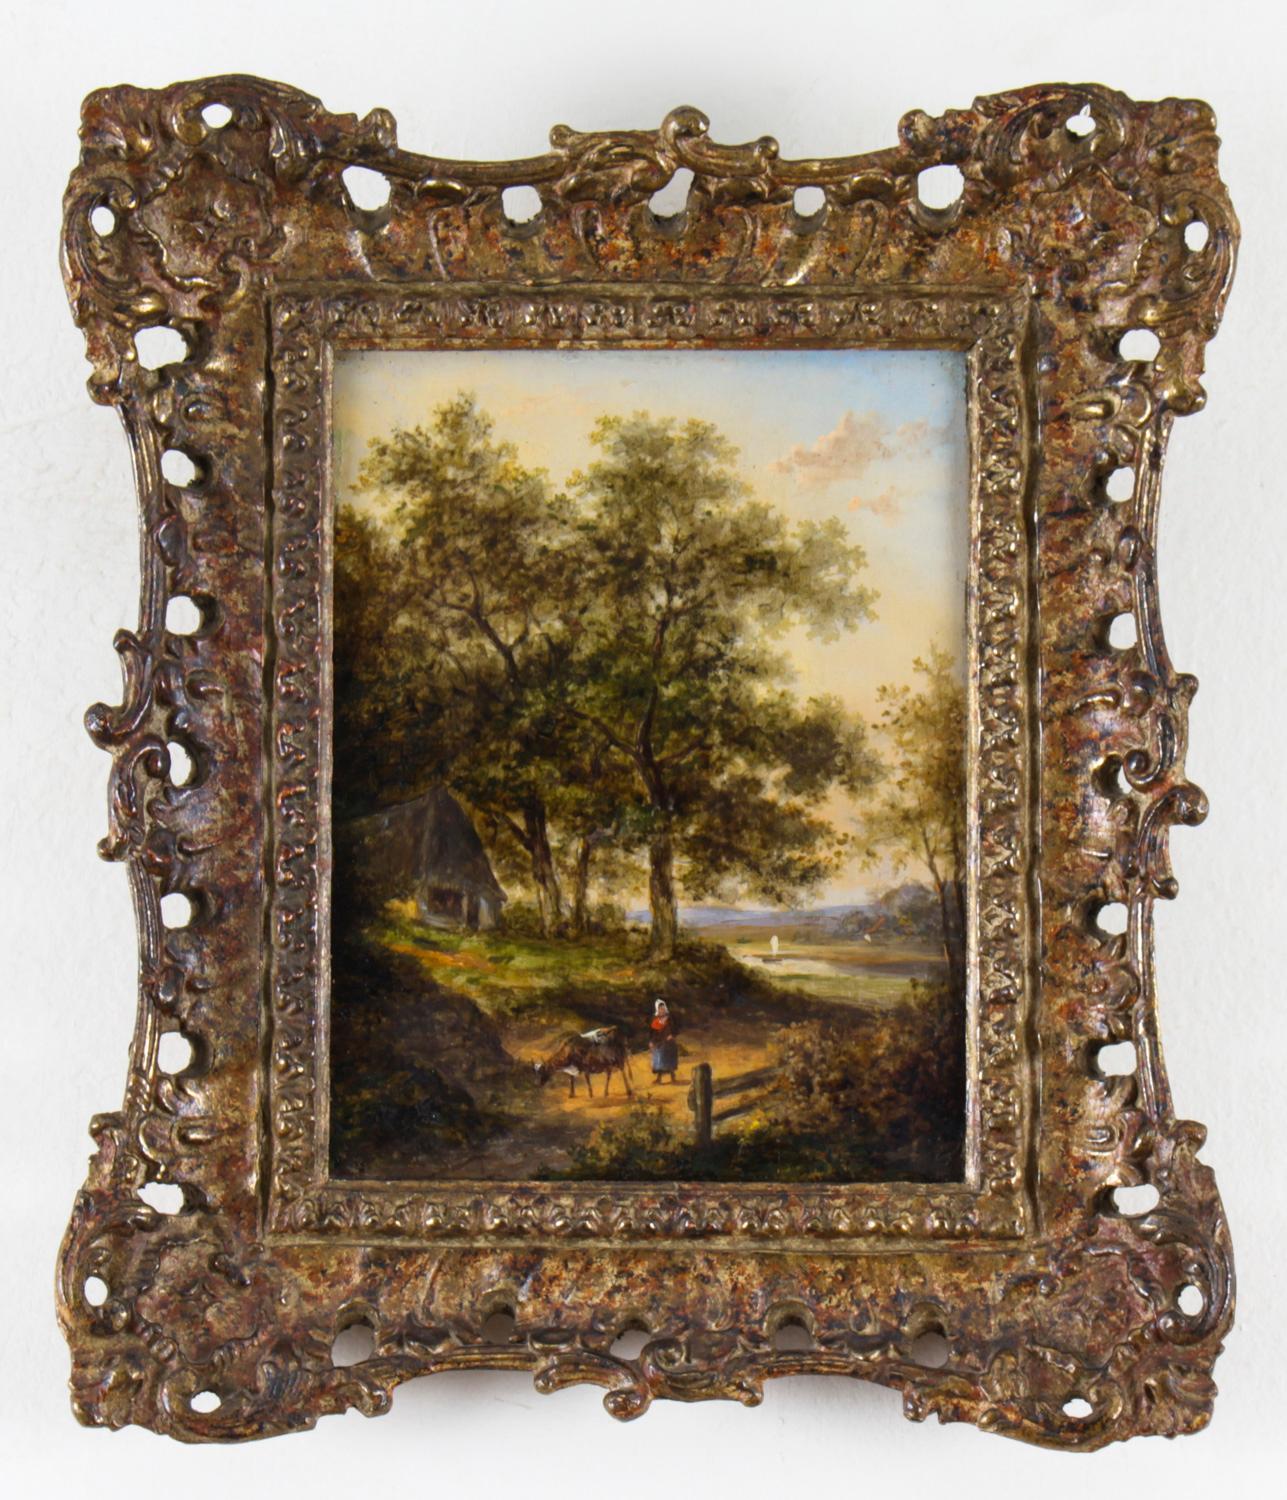 Une belle paire d'huiles sur panneau hollandaises encadrées par Jan Evert Morel, (1777-1808), toutes deux signées en bas à gauche et datées de la fin du 18ème siècle.
Les peintures présentent de charmantes scènes de forêt avec des personnages en